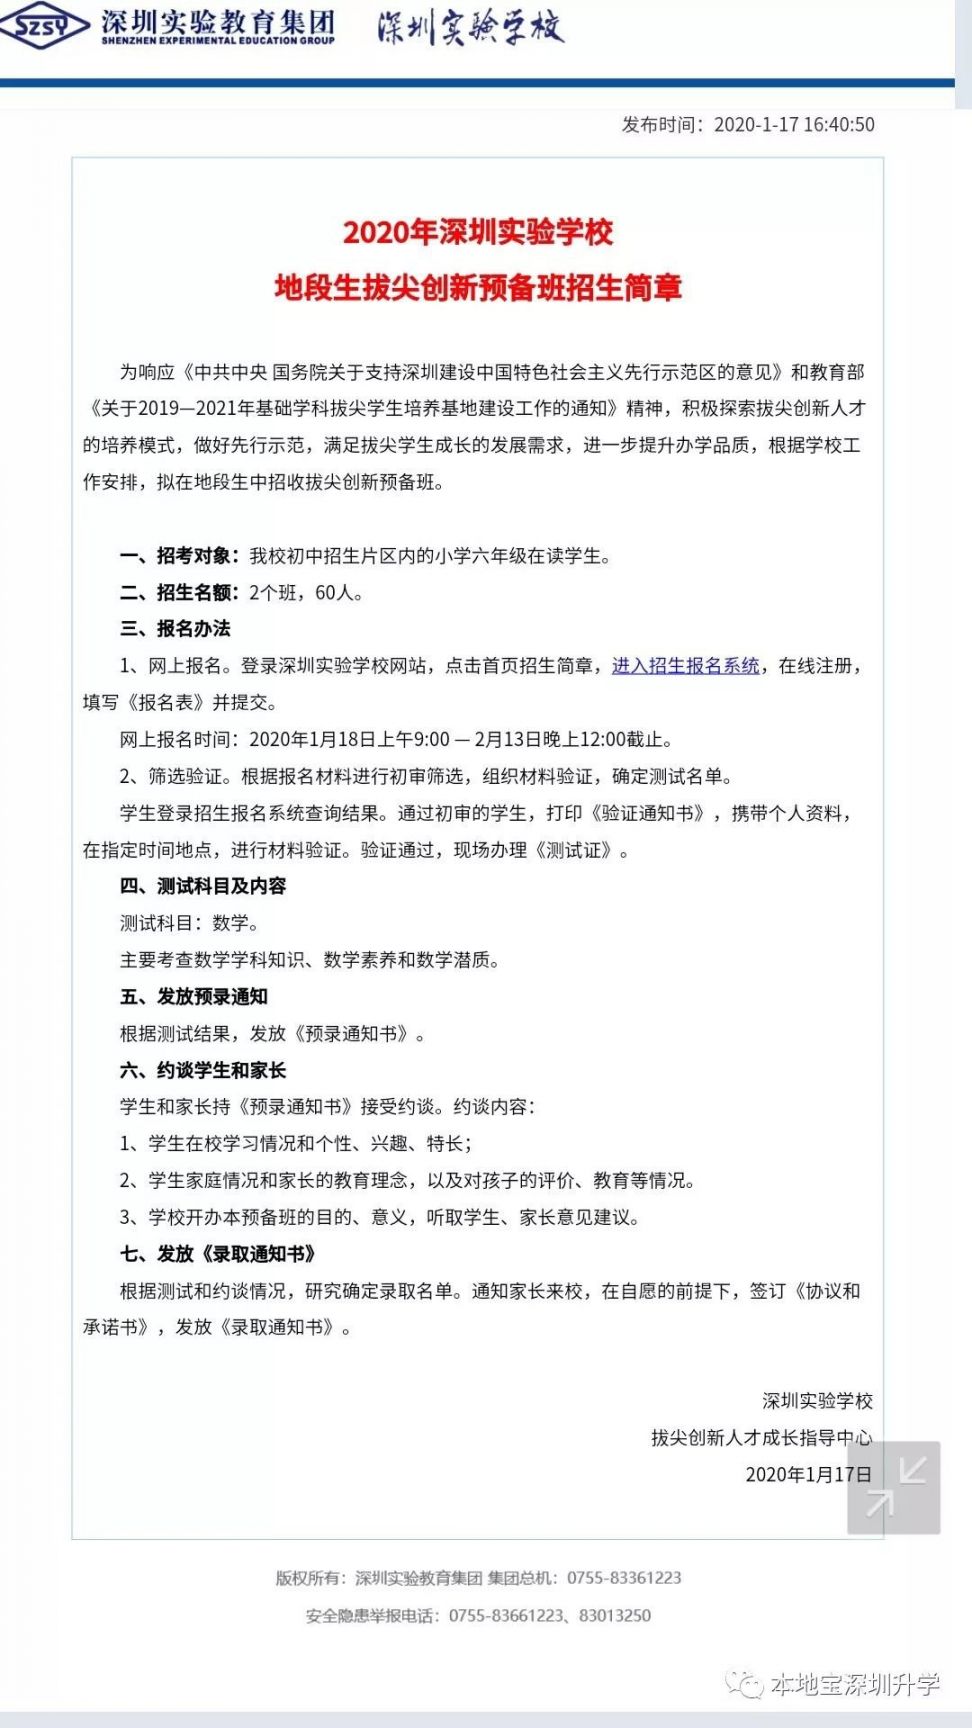 2020年深圳实验学校初中部地段生拔尖创新预备班招生简章